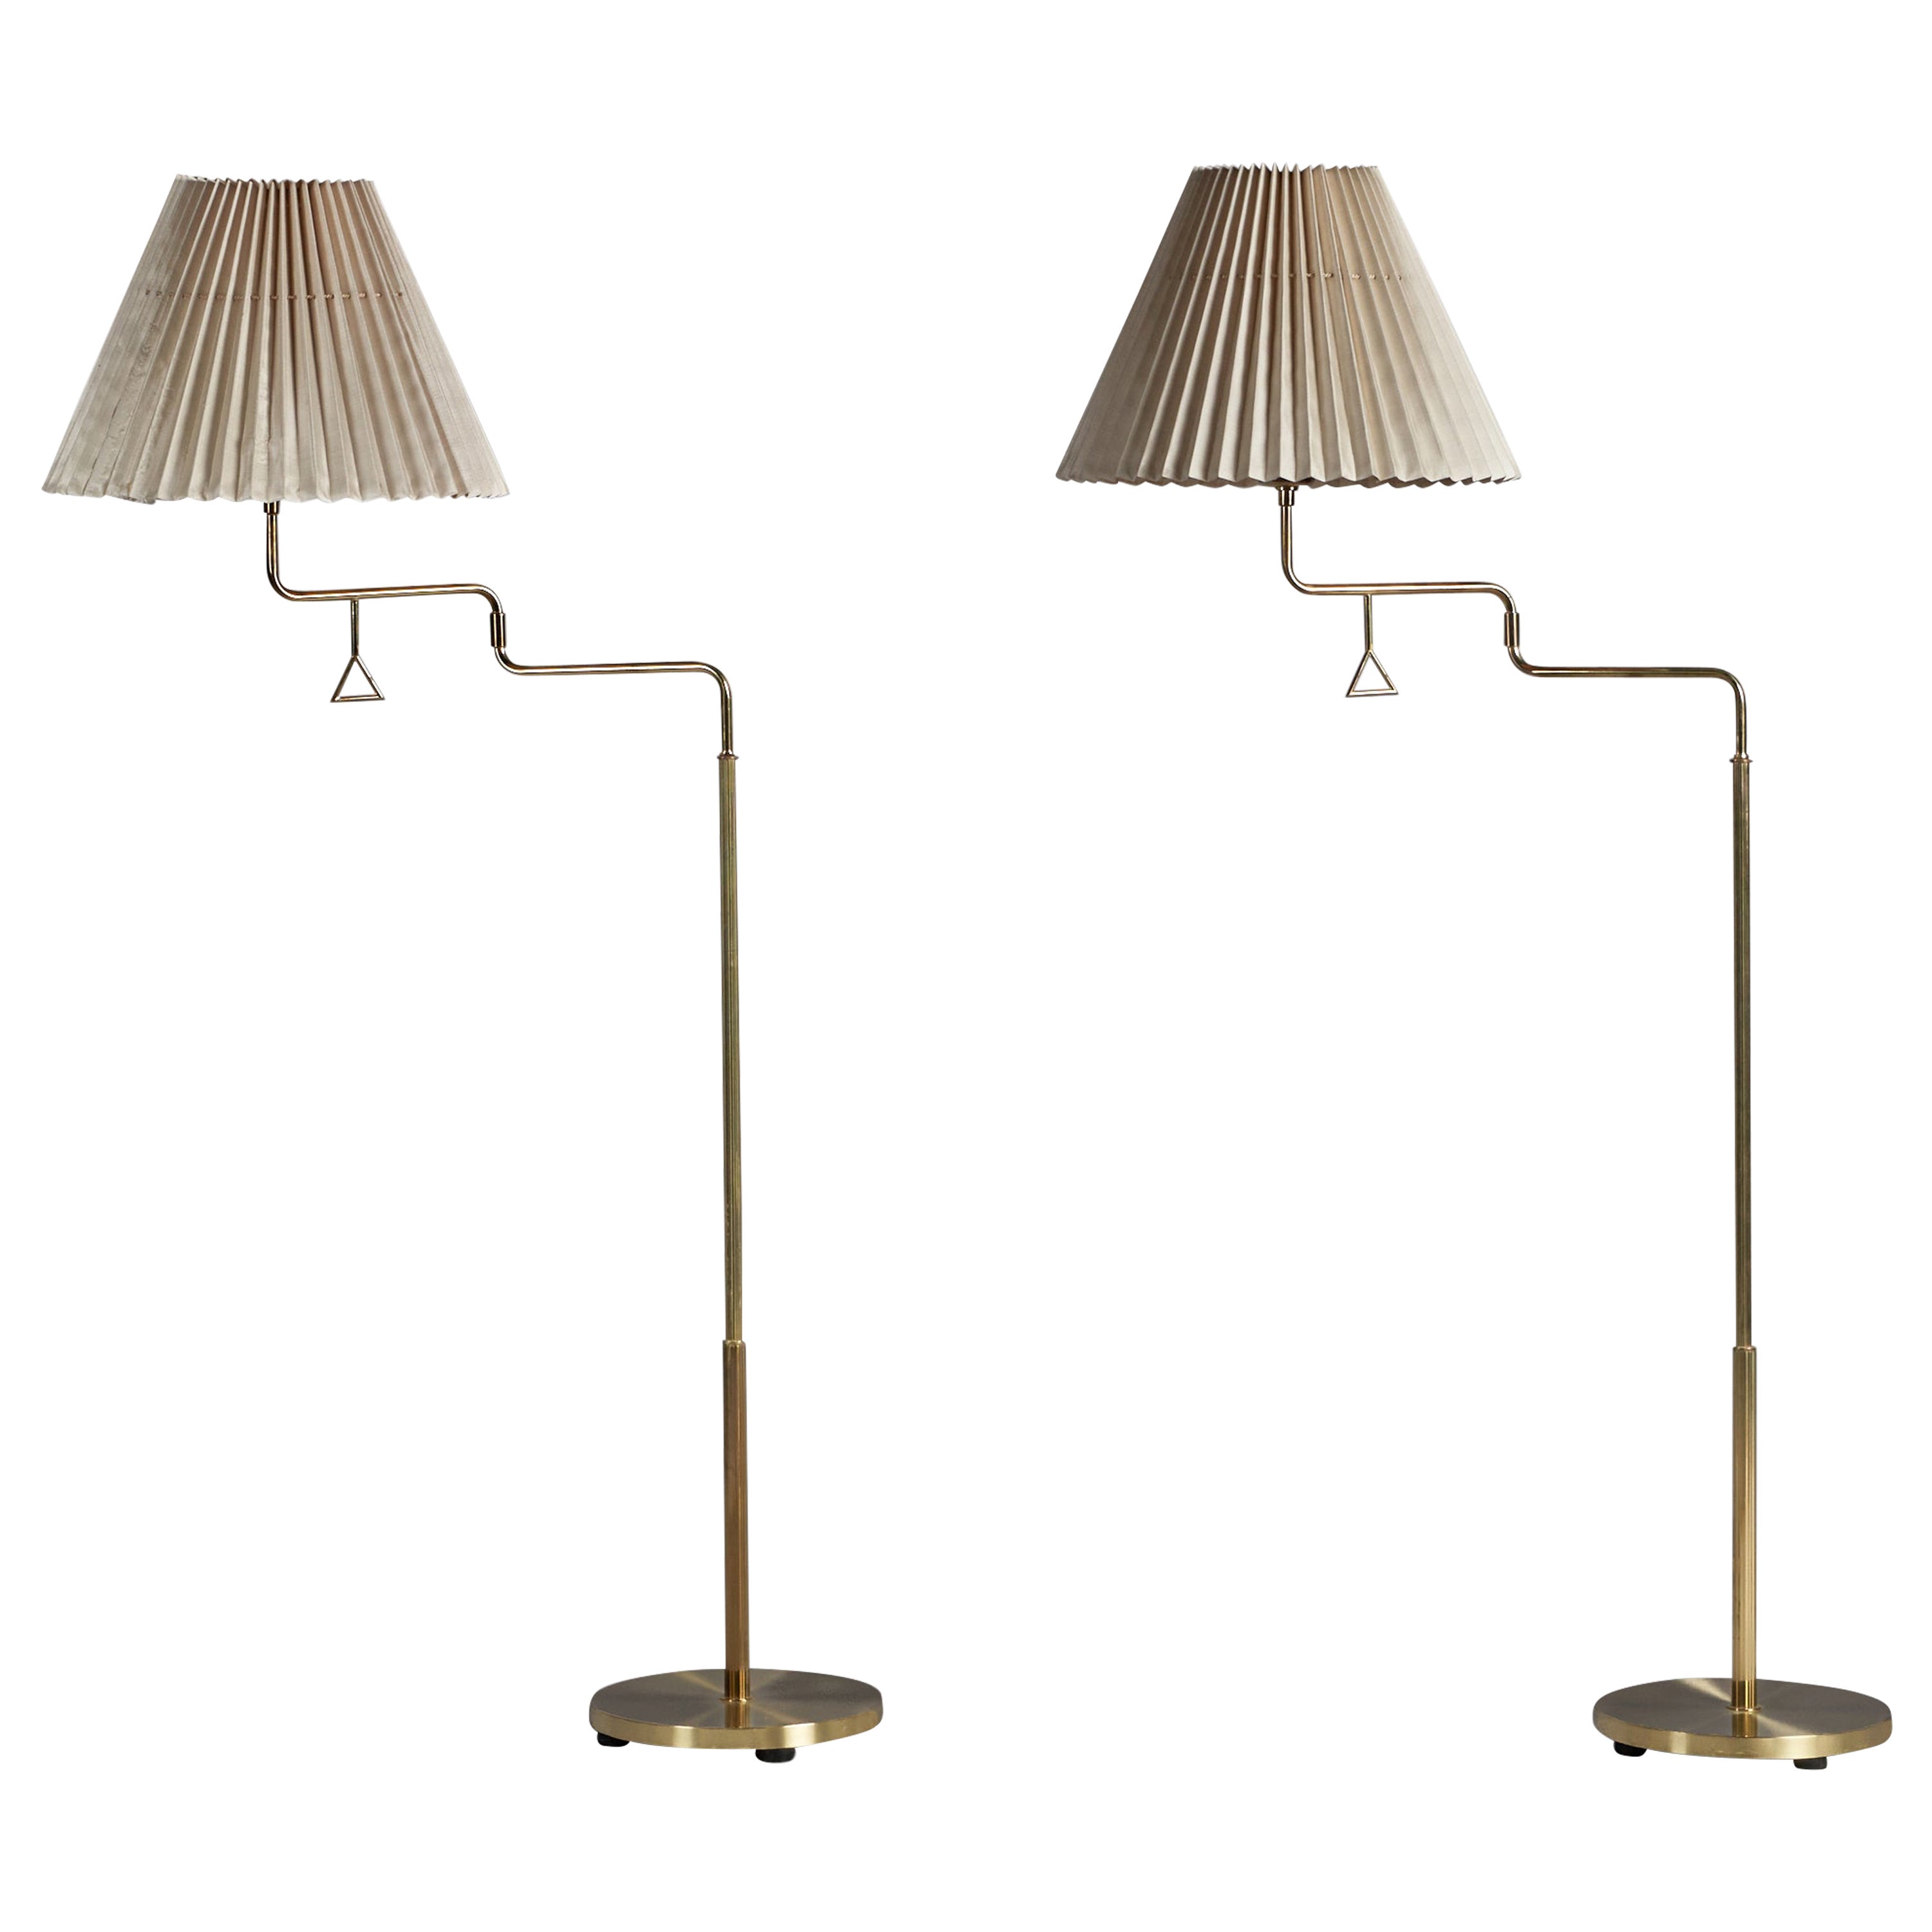 Armaturhantverk Tibro, Floor Lamps, Brass, Fabric, Sweden, 1960s For Sale